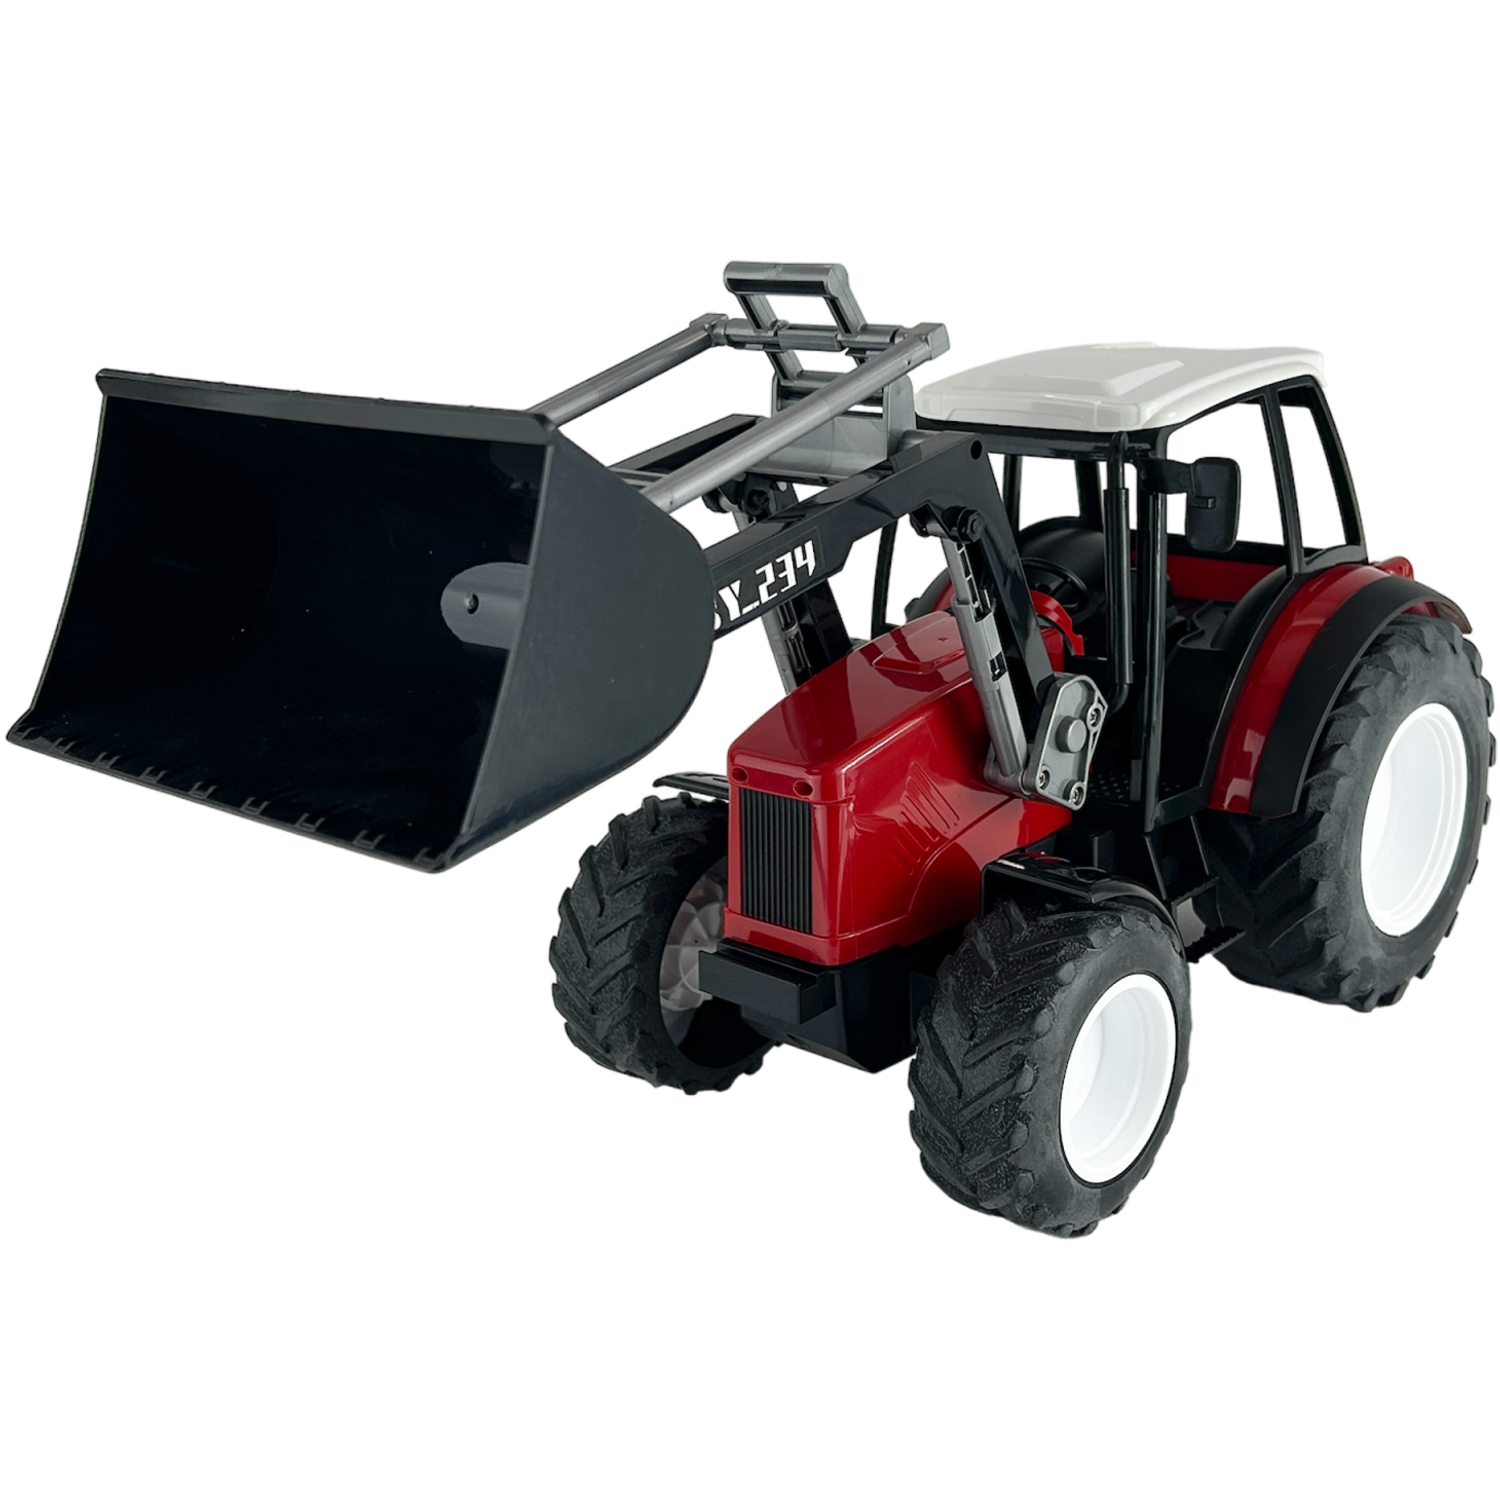 Сельскохозяйственный трактор DOUBLE EAGLE с ковшевым погрузчиком E234-003HT - фото 1